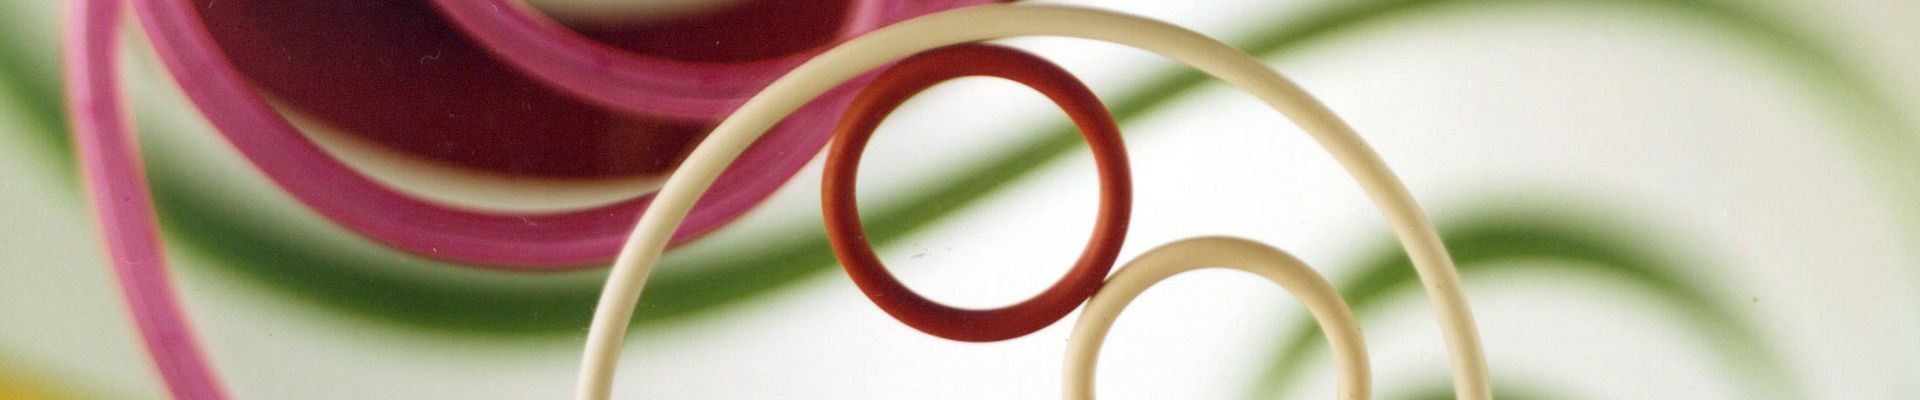 O-링, 웨더씰, 전자 커넥터 절연체 및 스파크 플러그 부트를 포함한 성형 SILASTIC™ 플루오로실리콘 고무 부품 